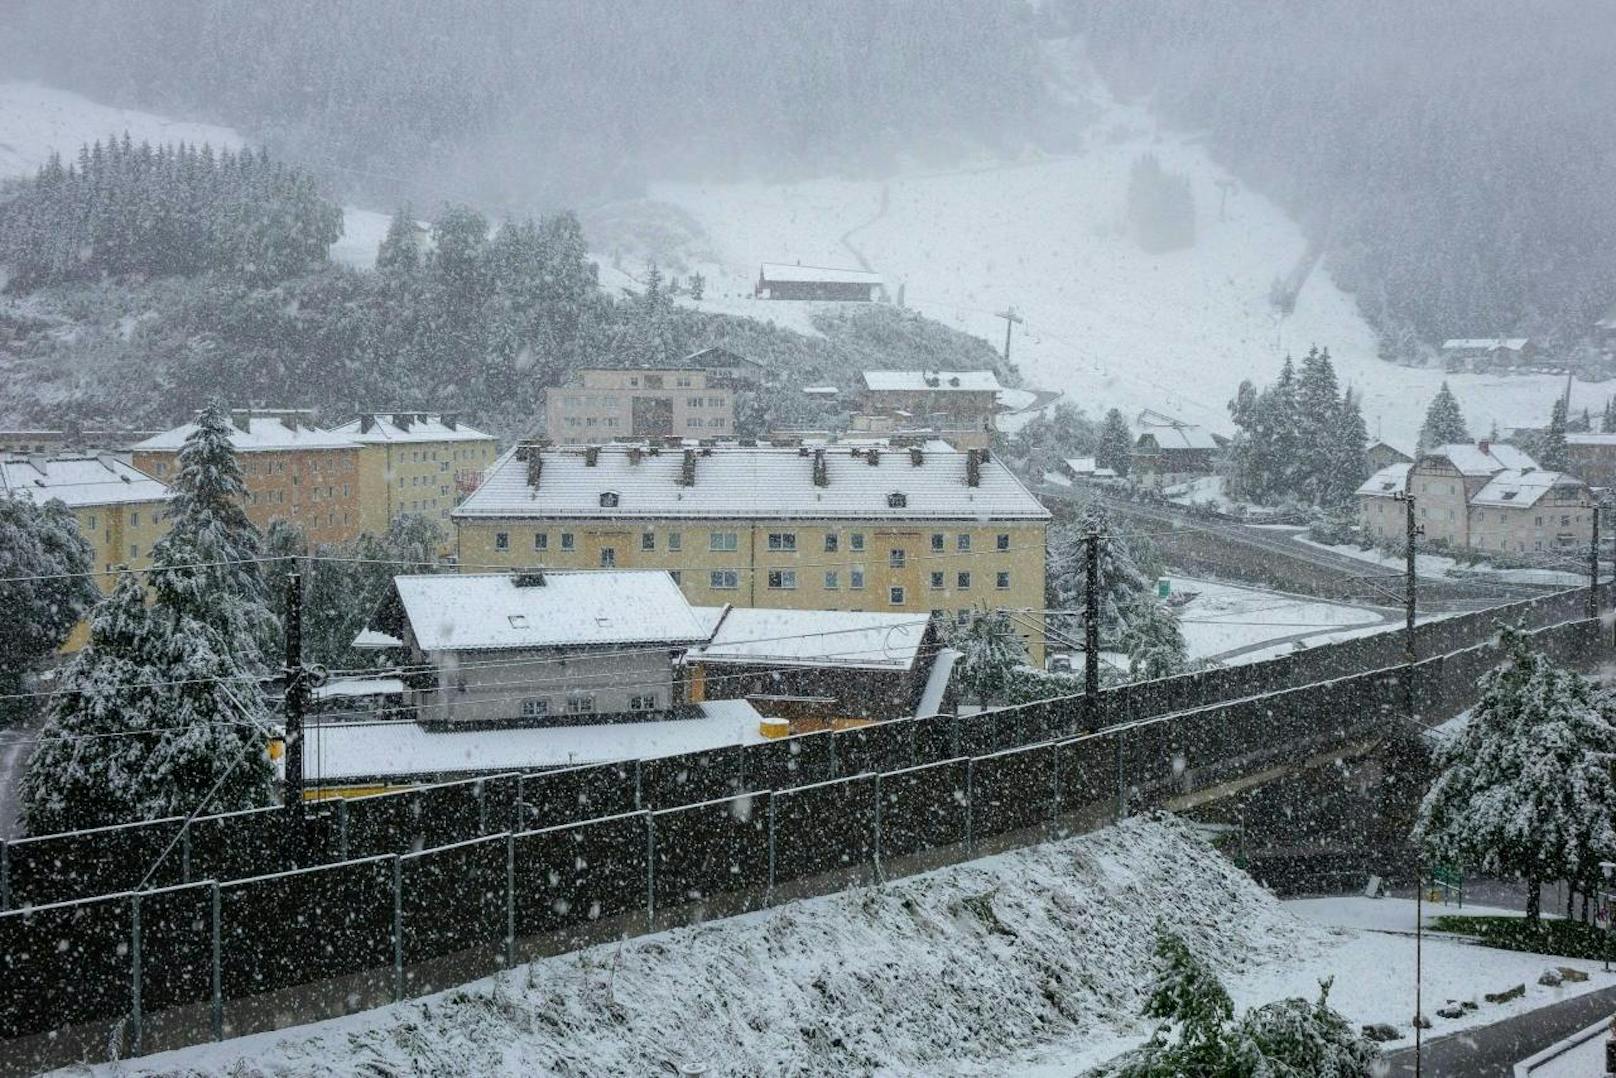 Der Wettersturz hat in der Nacht auf Sonntag, 26. August 2018, im Gebirge für ergiebige Niederschläge und teils kräftige Schneefälle gesorgt. Im Bild: Schneefall in Bad Gastein.